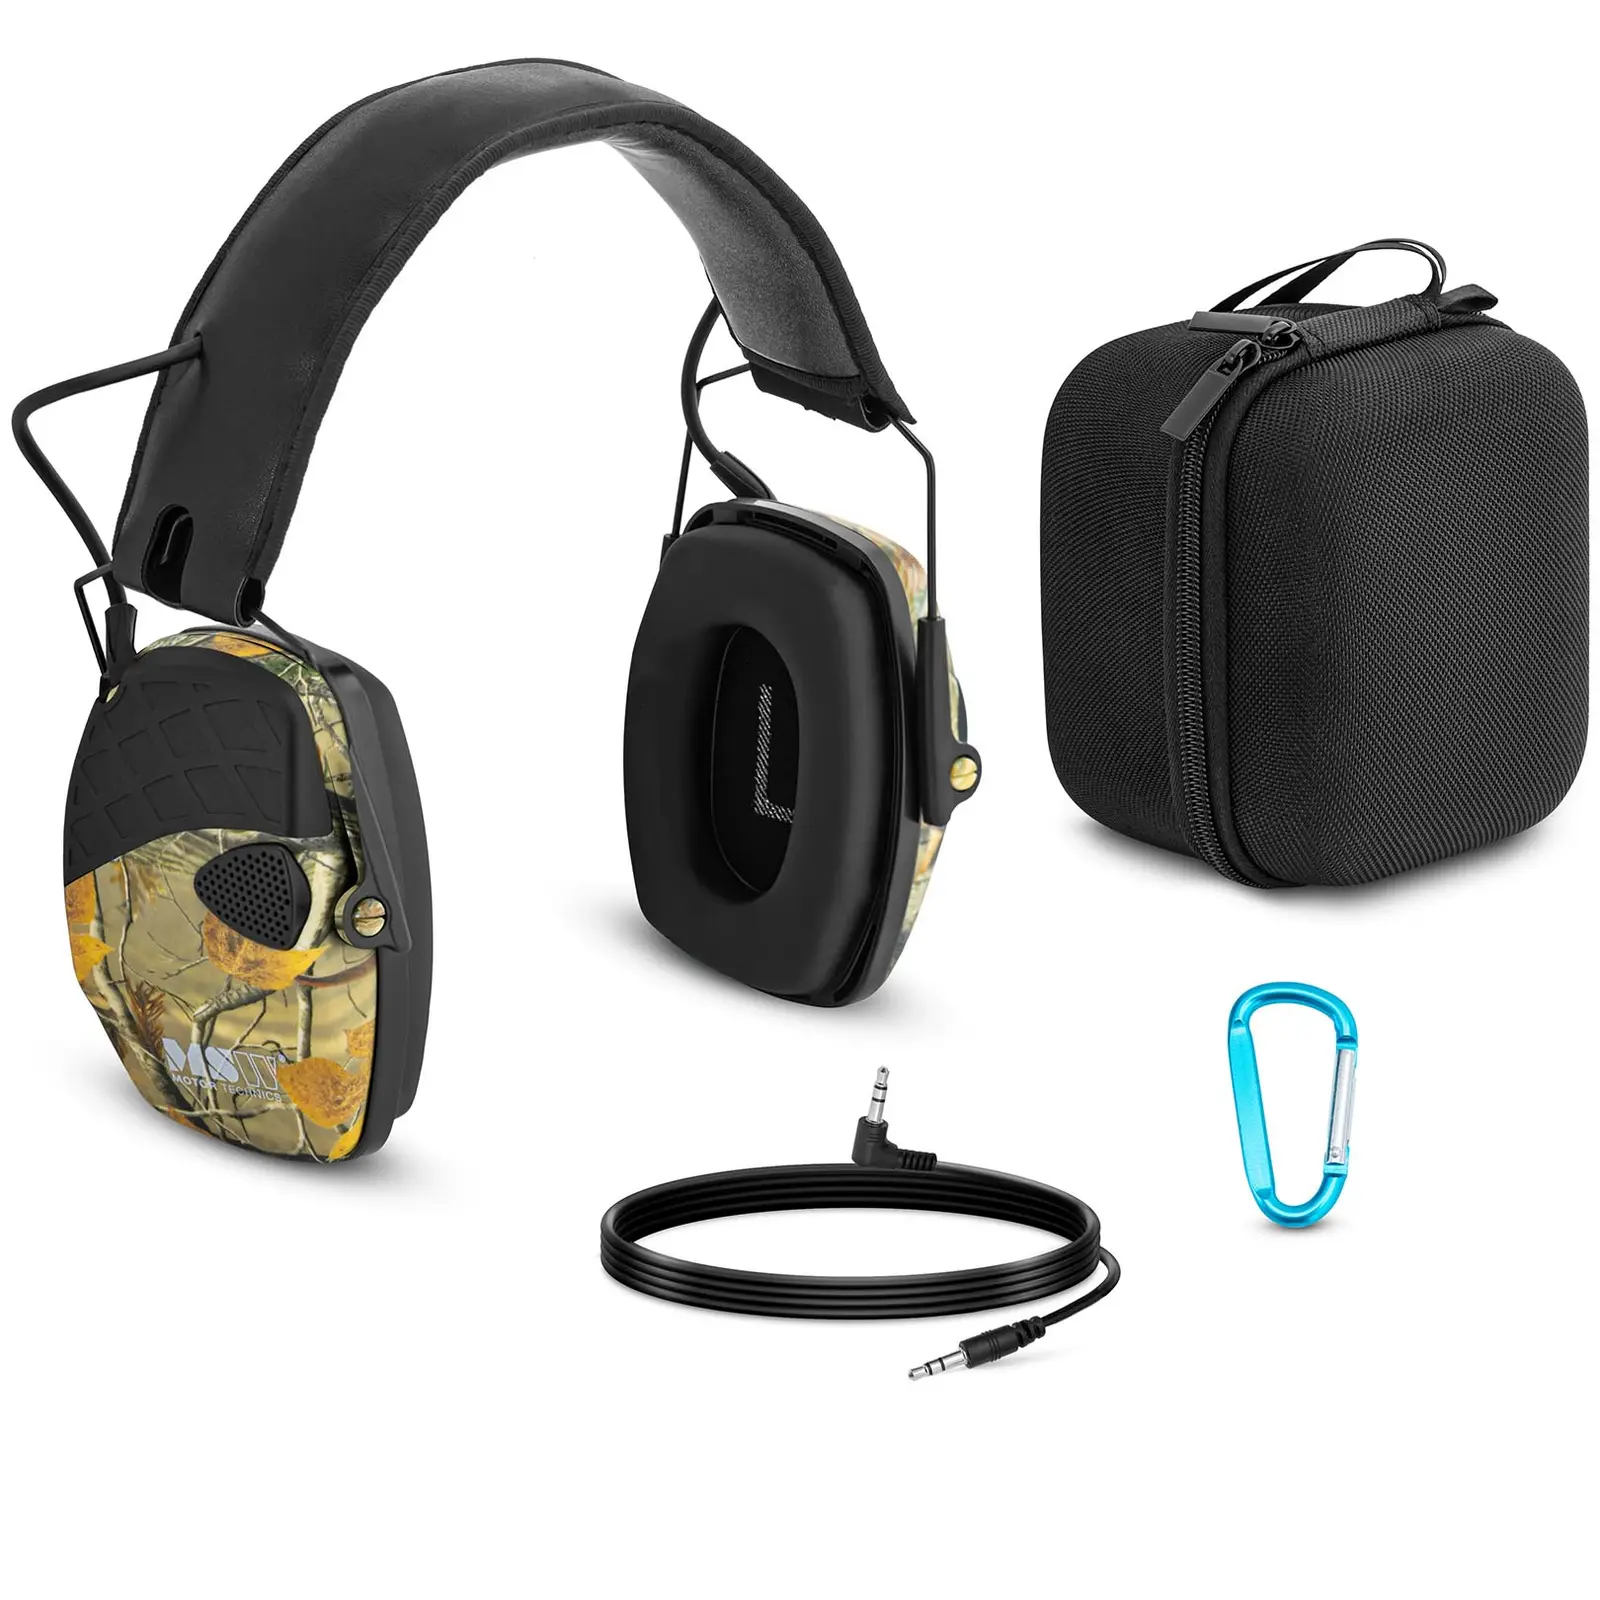 Pracovní sluchátka dynamická ochrana proti hluku ve venkovním prostředí kamuflážní barva - Ochranné pracovní pomůcky MSW